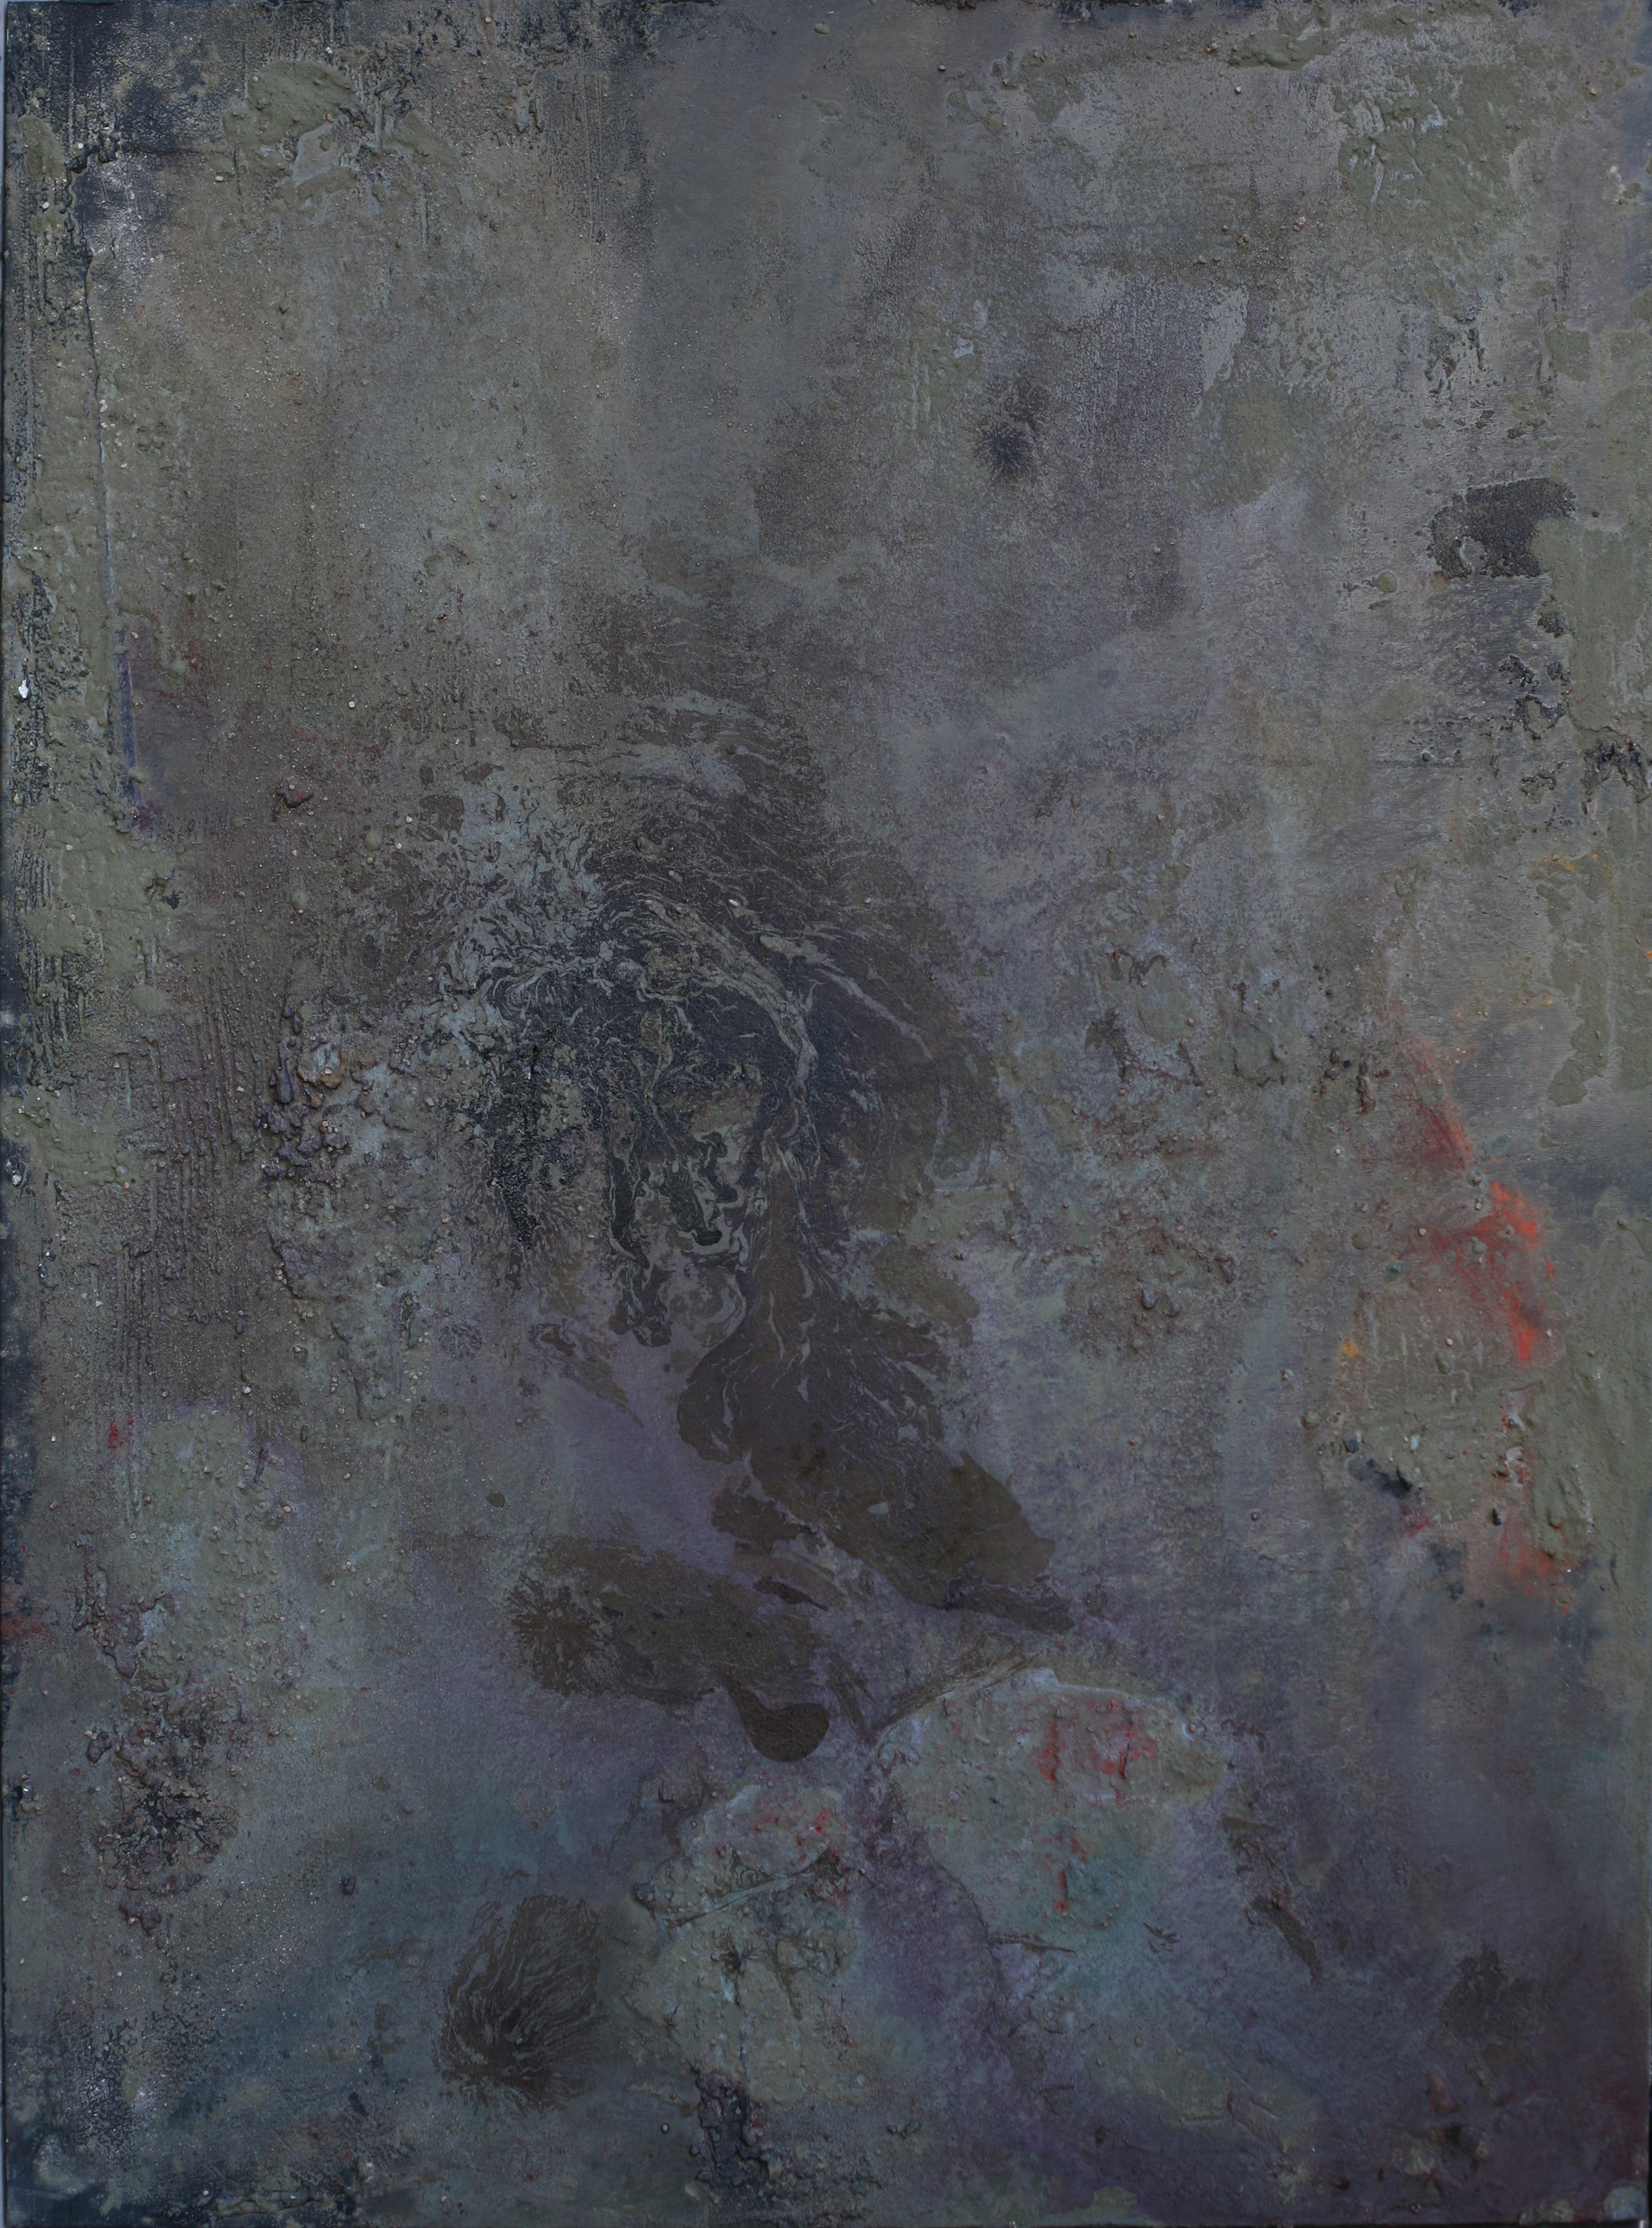 "Senza Titolo", tecnica mista su tela, 120 x 90, 2013